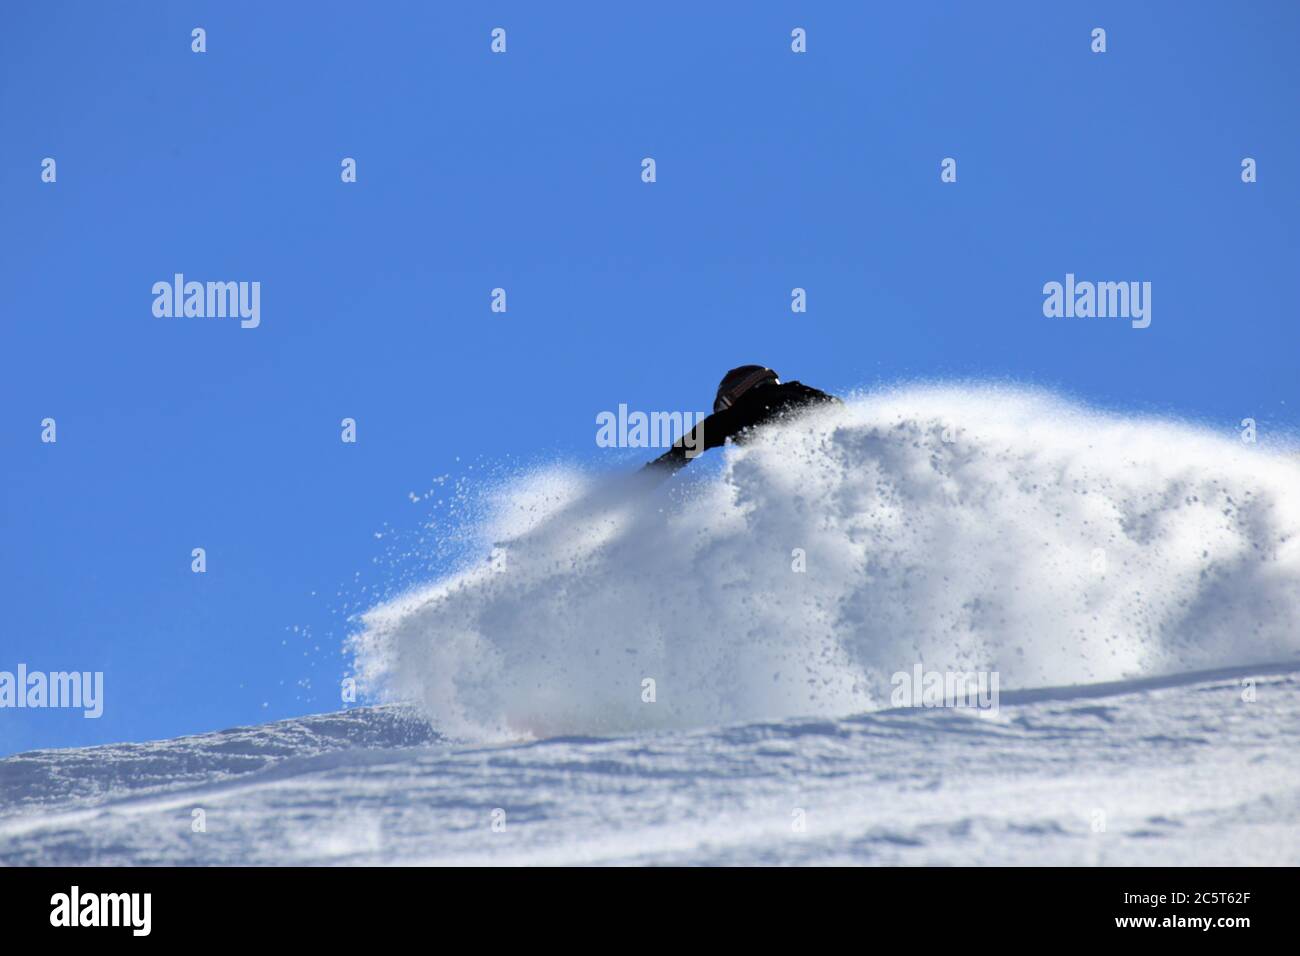 Sportlicher Snowboarder im Skigebiet von Serfaus, Fiss, Ladis (Tirol, Österreich) Stock Photo